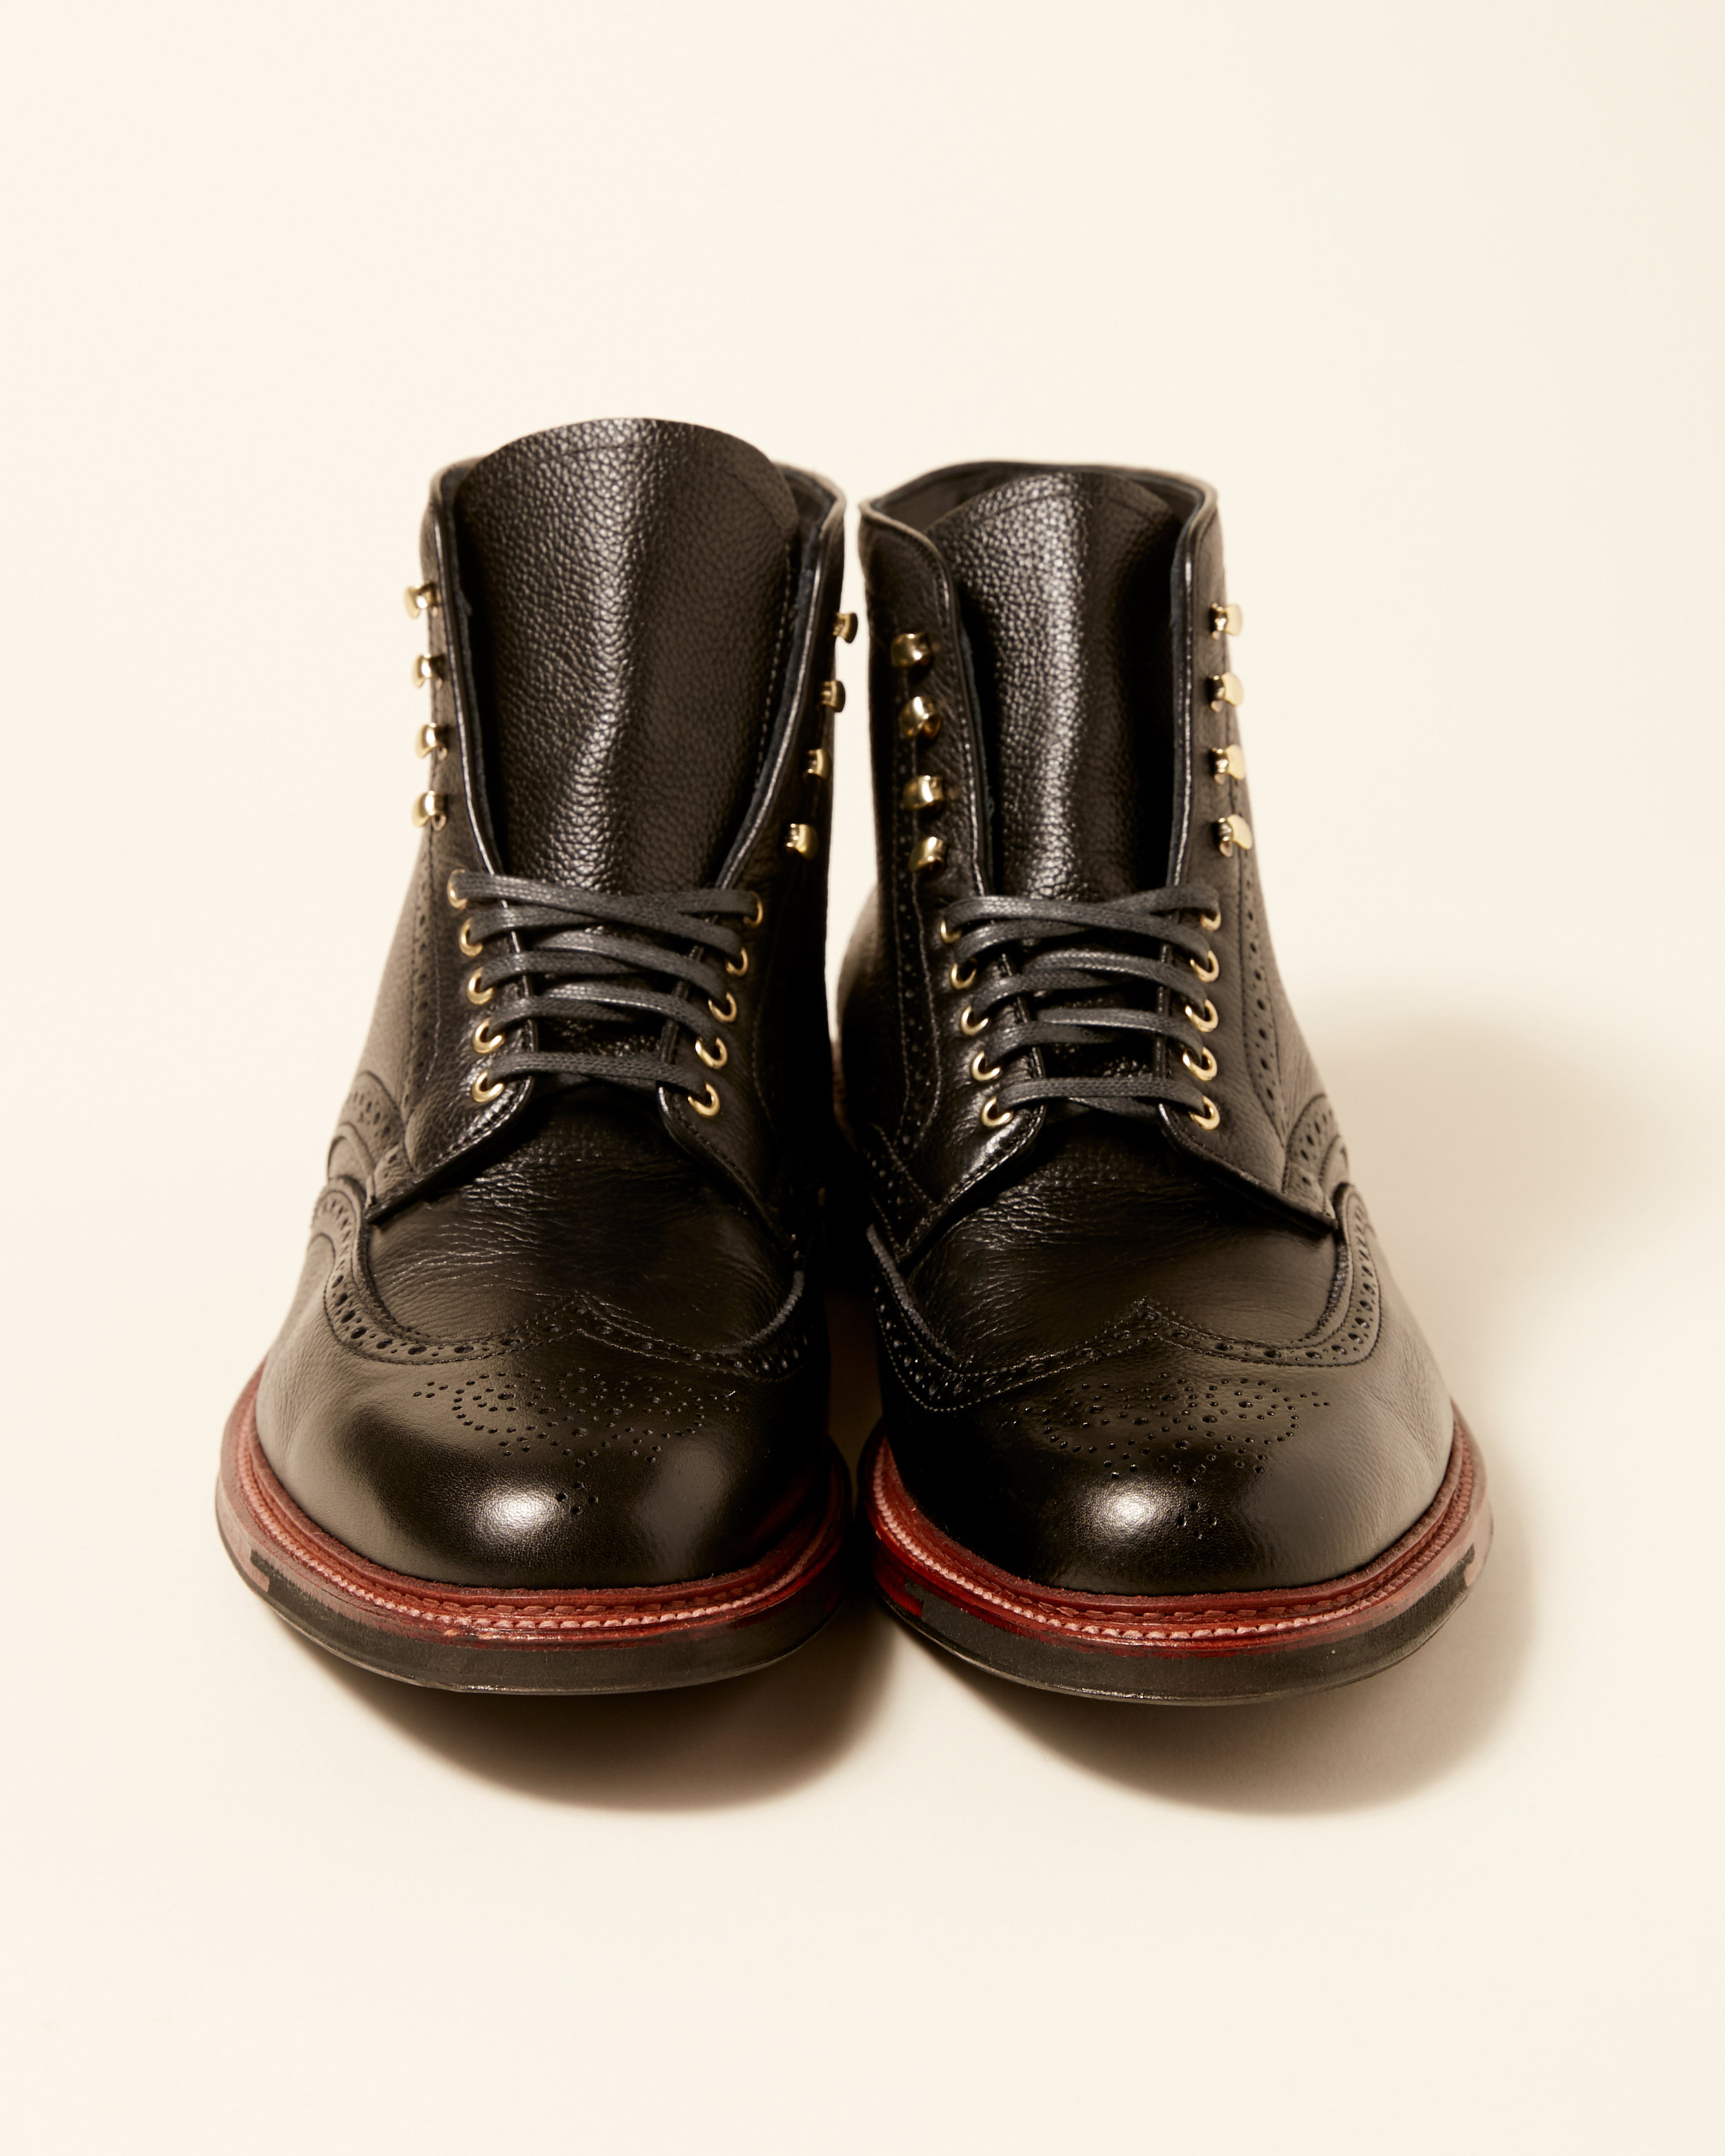 black wingtip boots